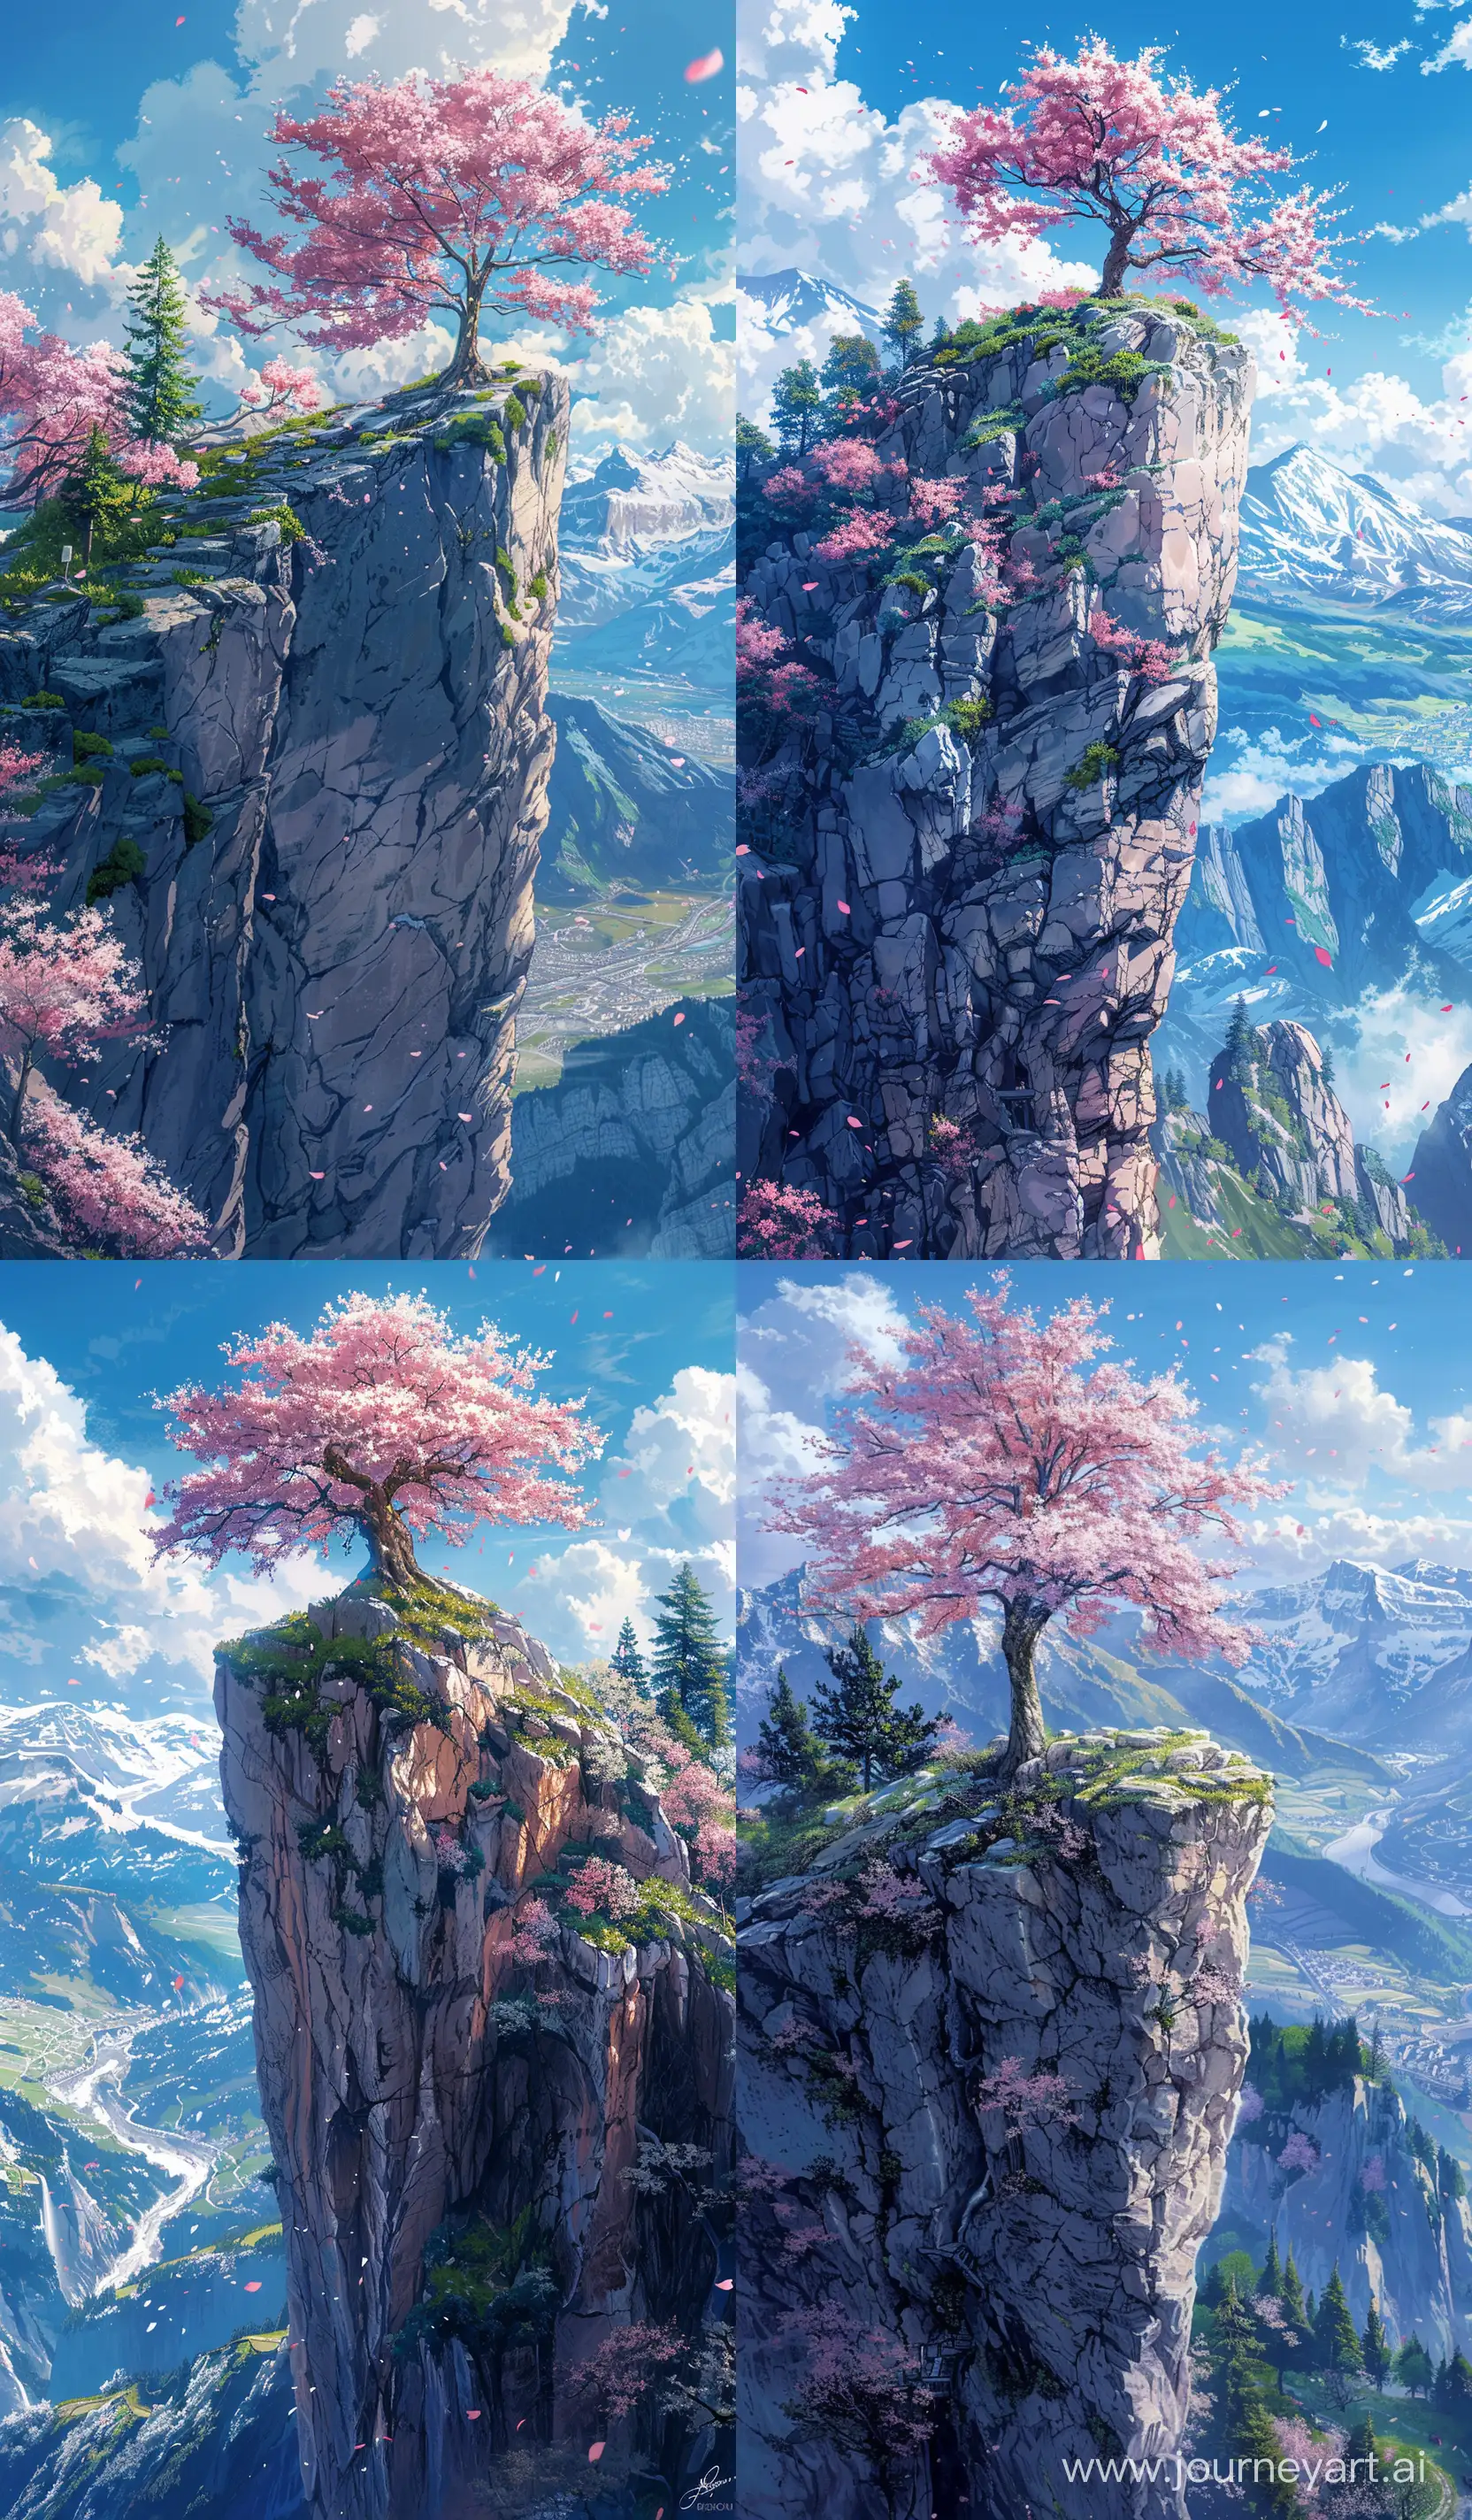 Serene-Anime-Landscape-Cherry-Blossom-Cliff-View-in-Makoto-Shinkai-Style